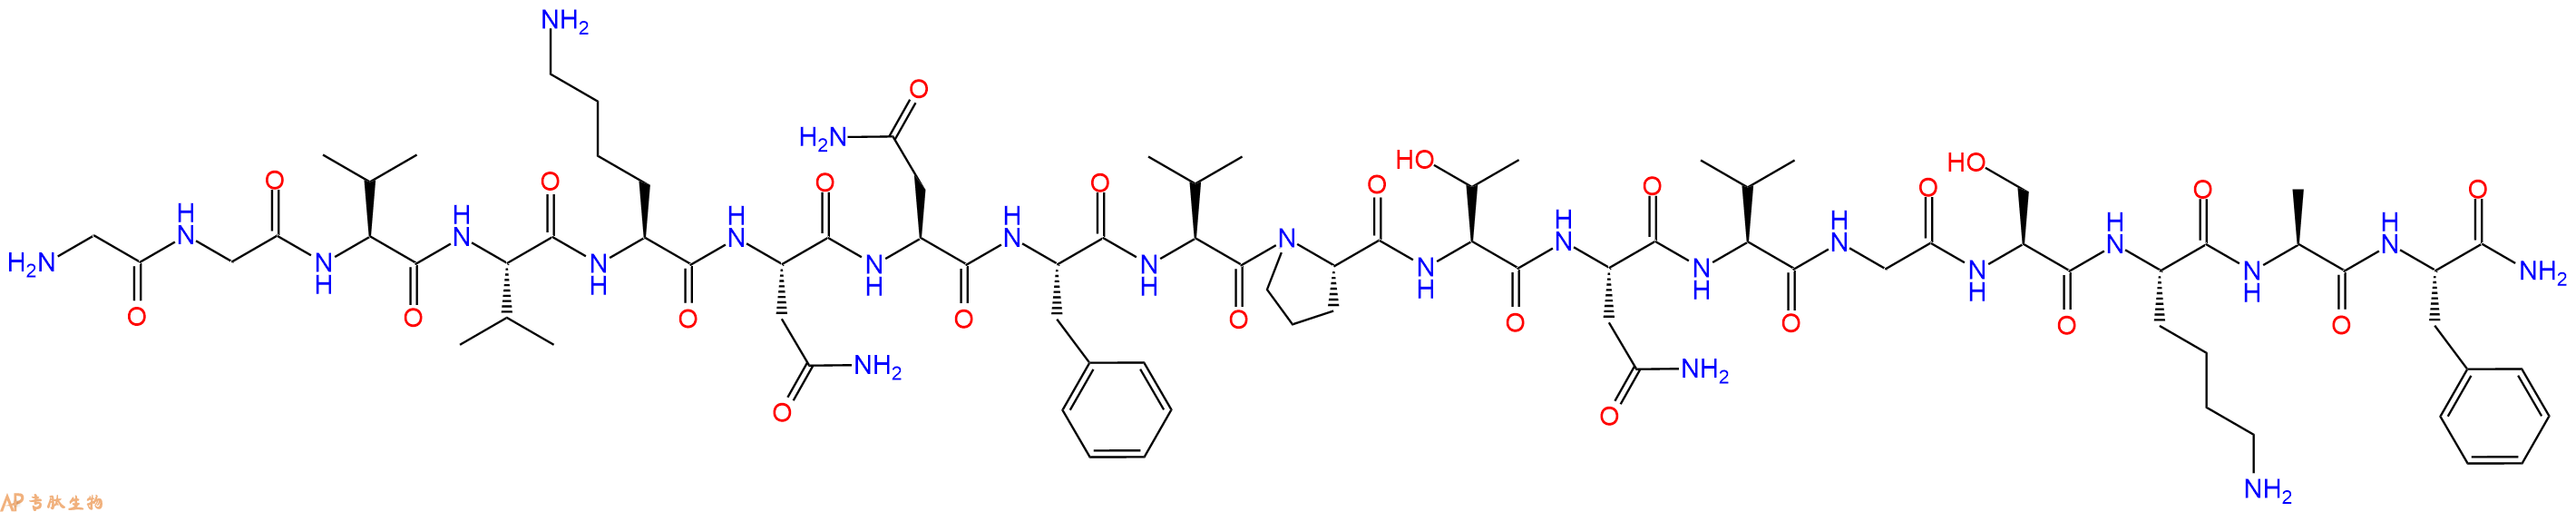 专肽生物产品CalcitoninGeneRelated Peptide (20-37), human